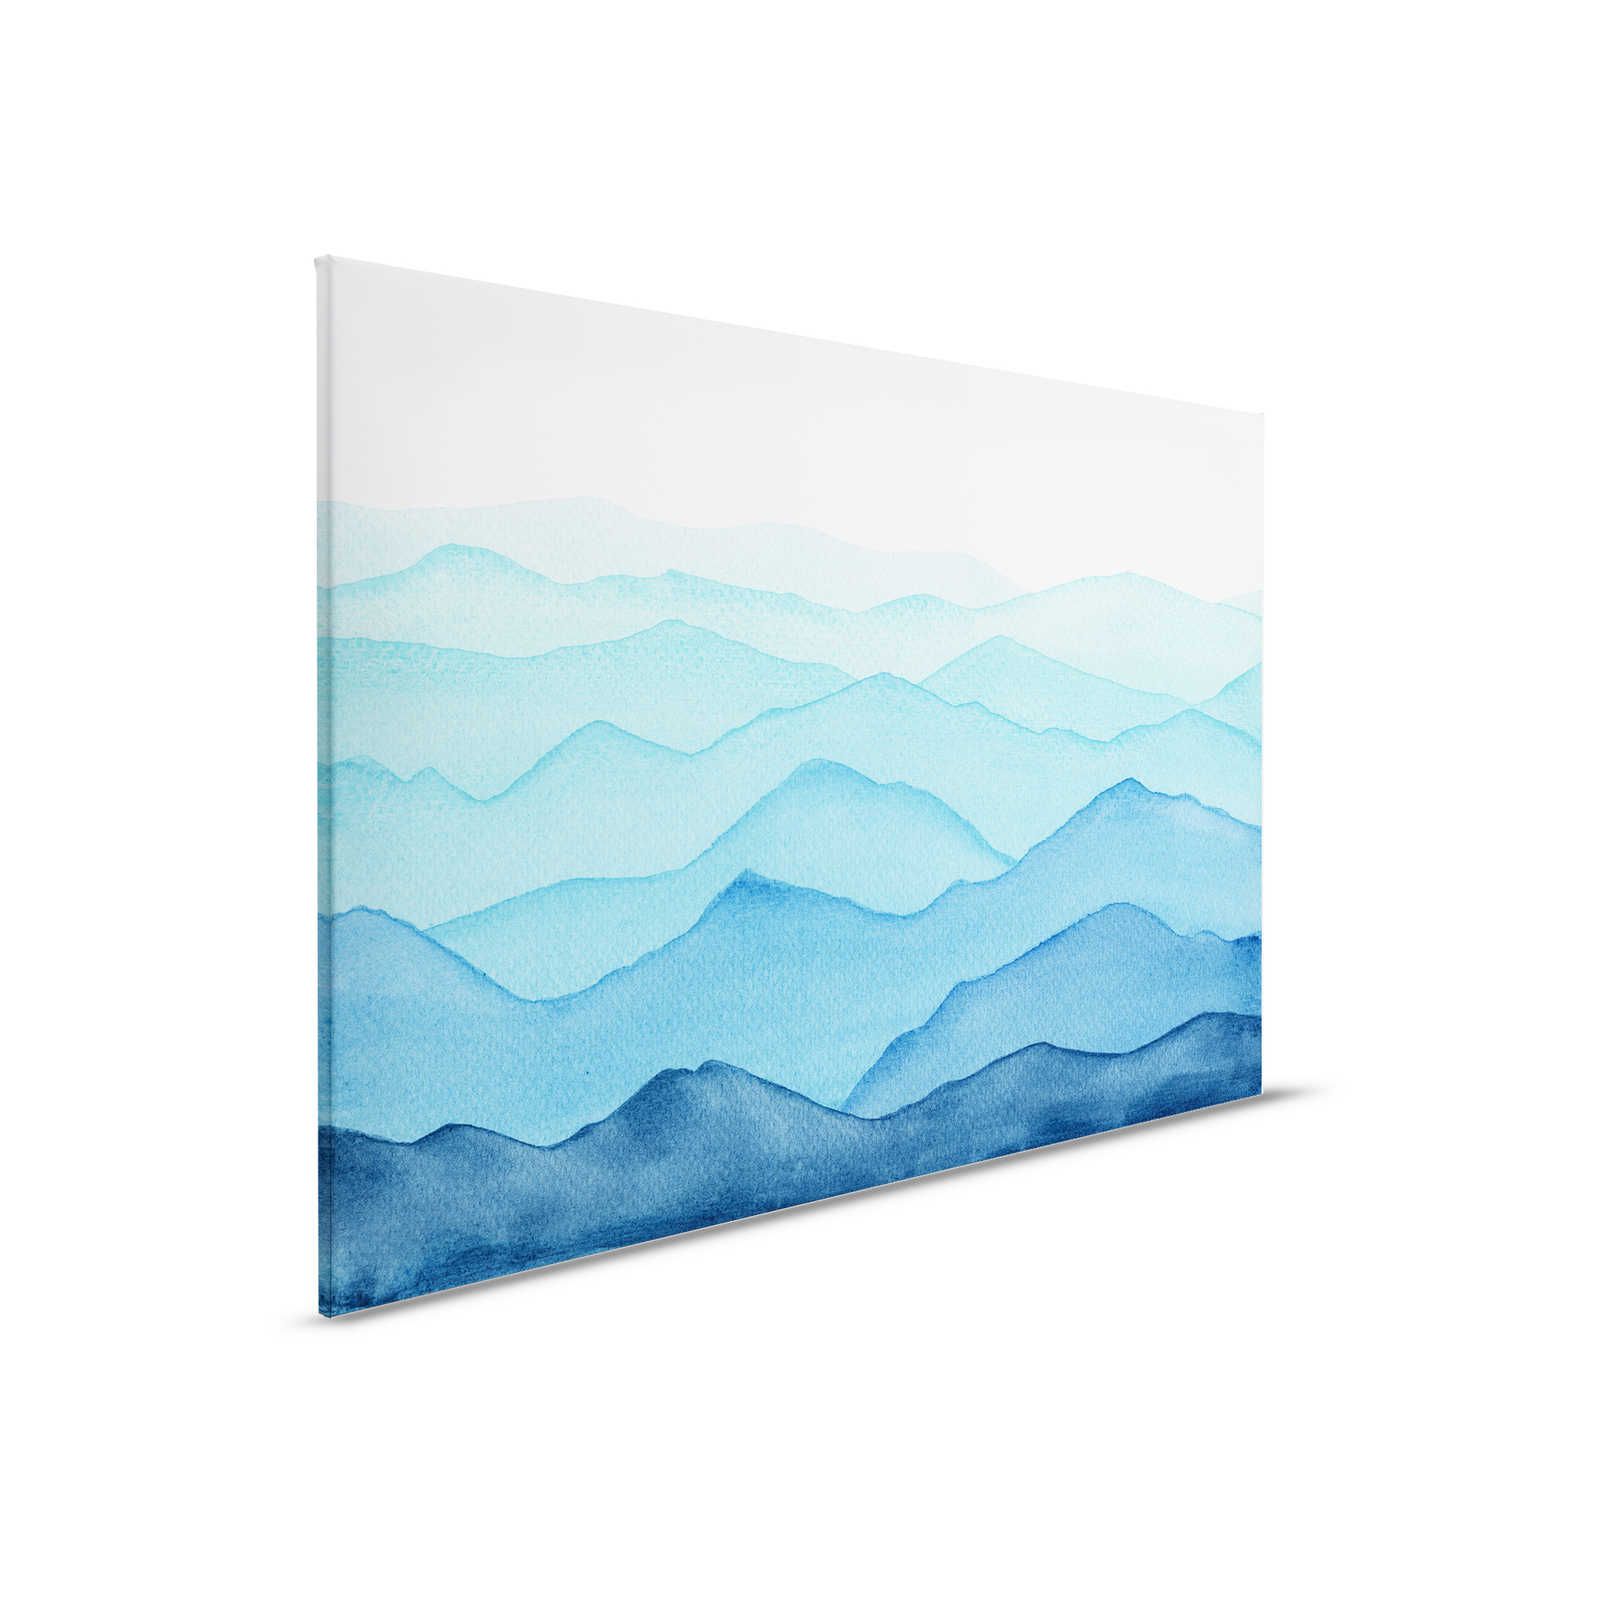 Toile Mer avec vagues à l'aquarelle - 90 cm x 60 cm
